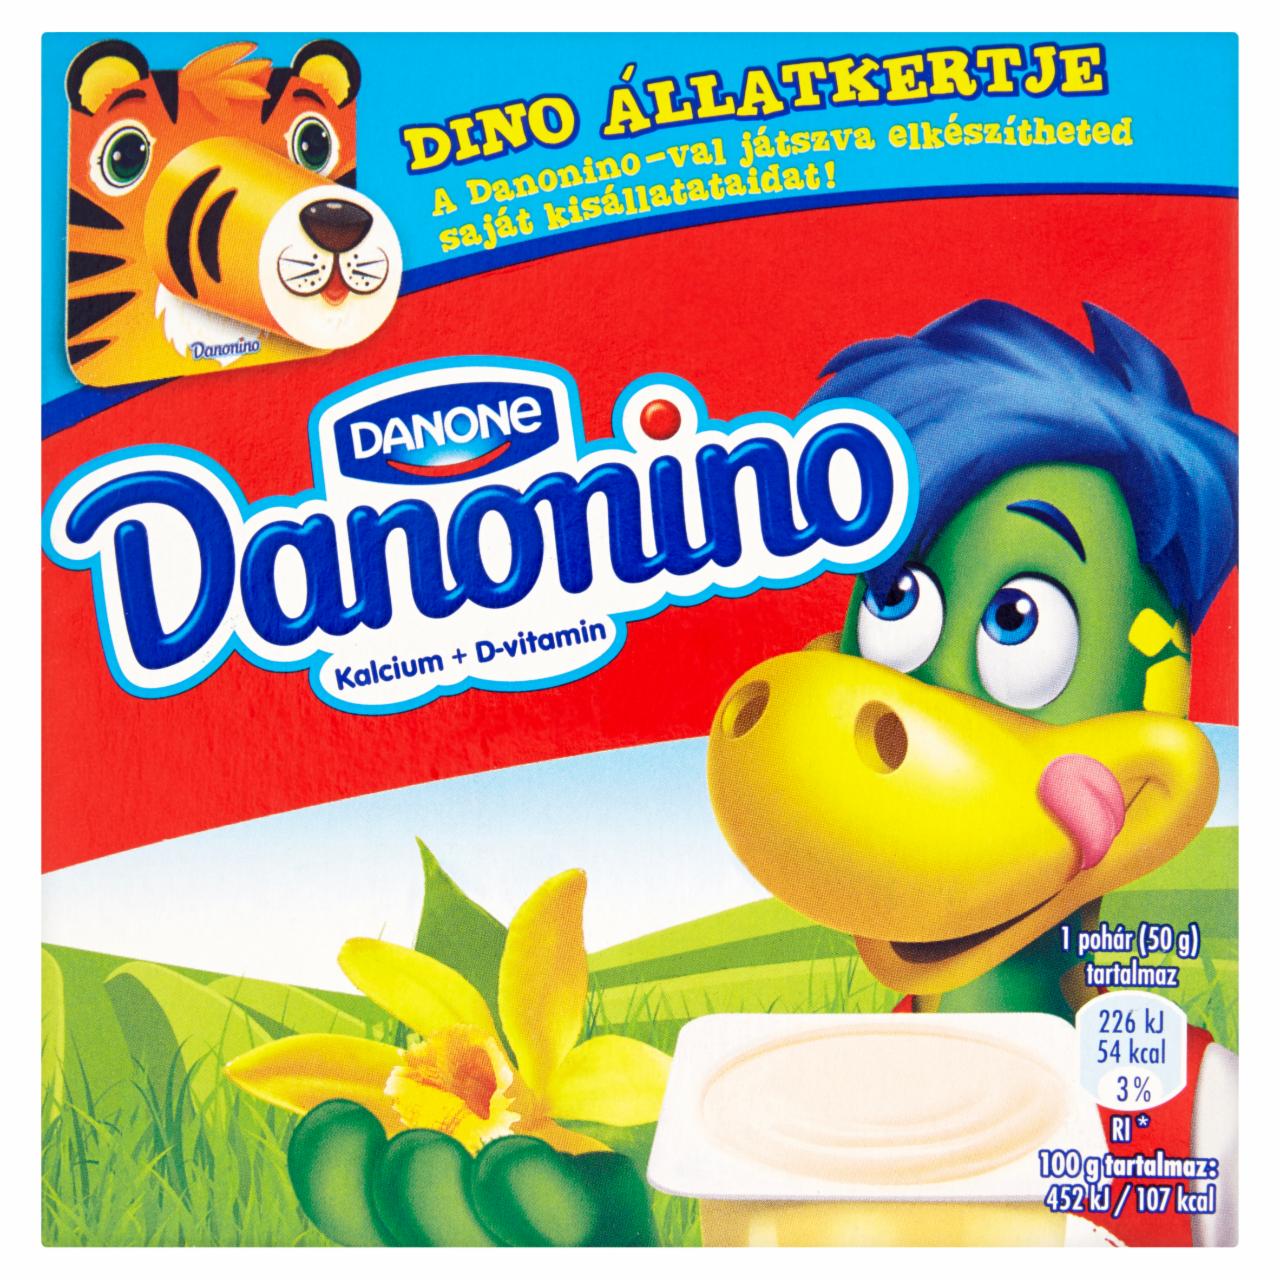 Képek - Danone Danonino vaníliaízű tejtermék hozzáadott kalciummal és D-vitaminnal 4 x 50 g